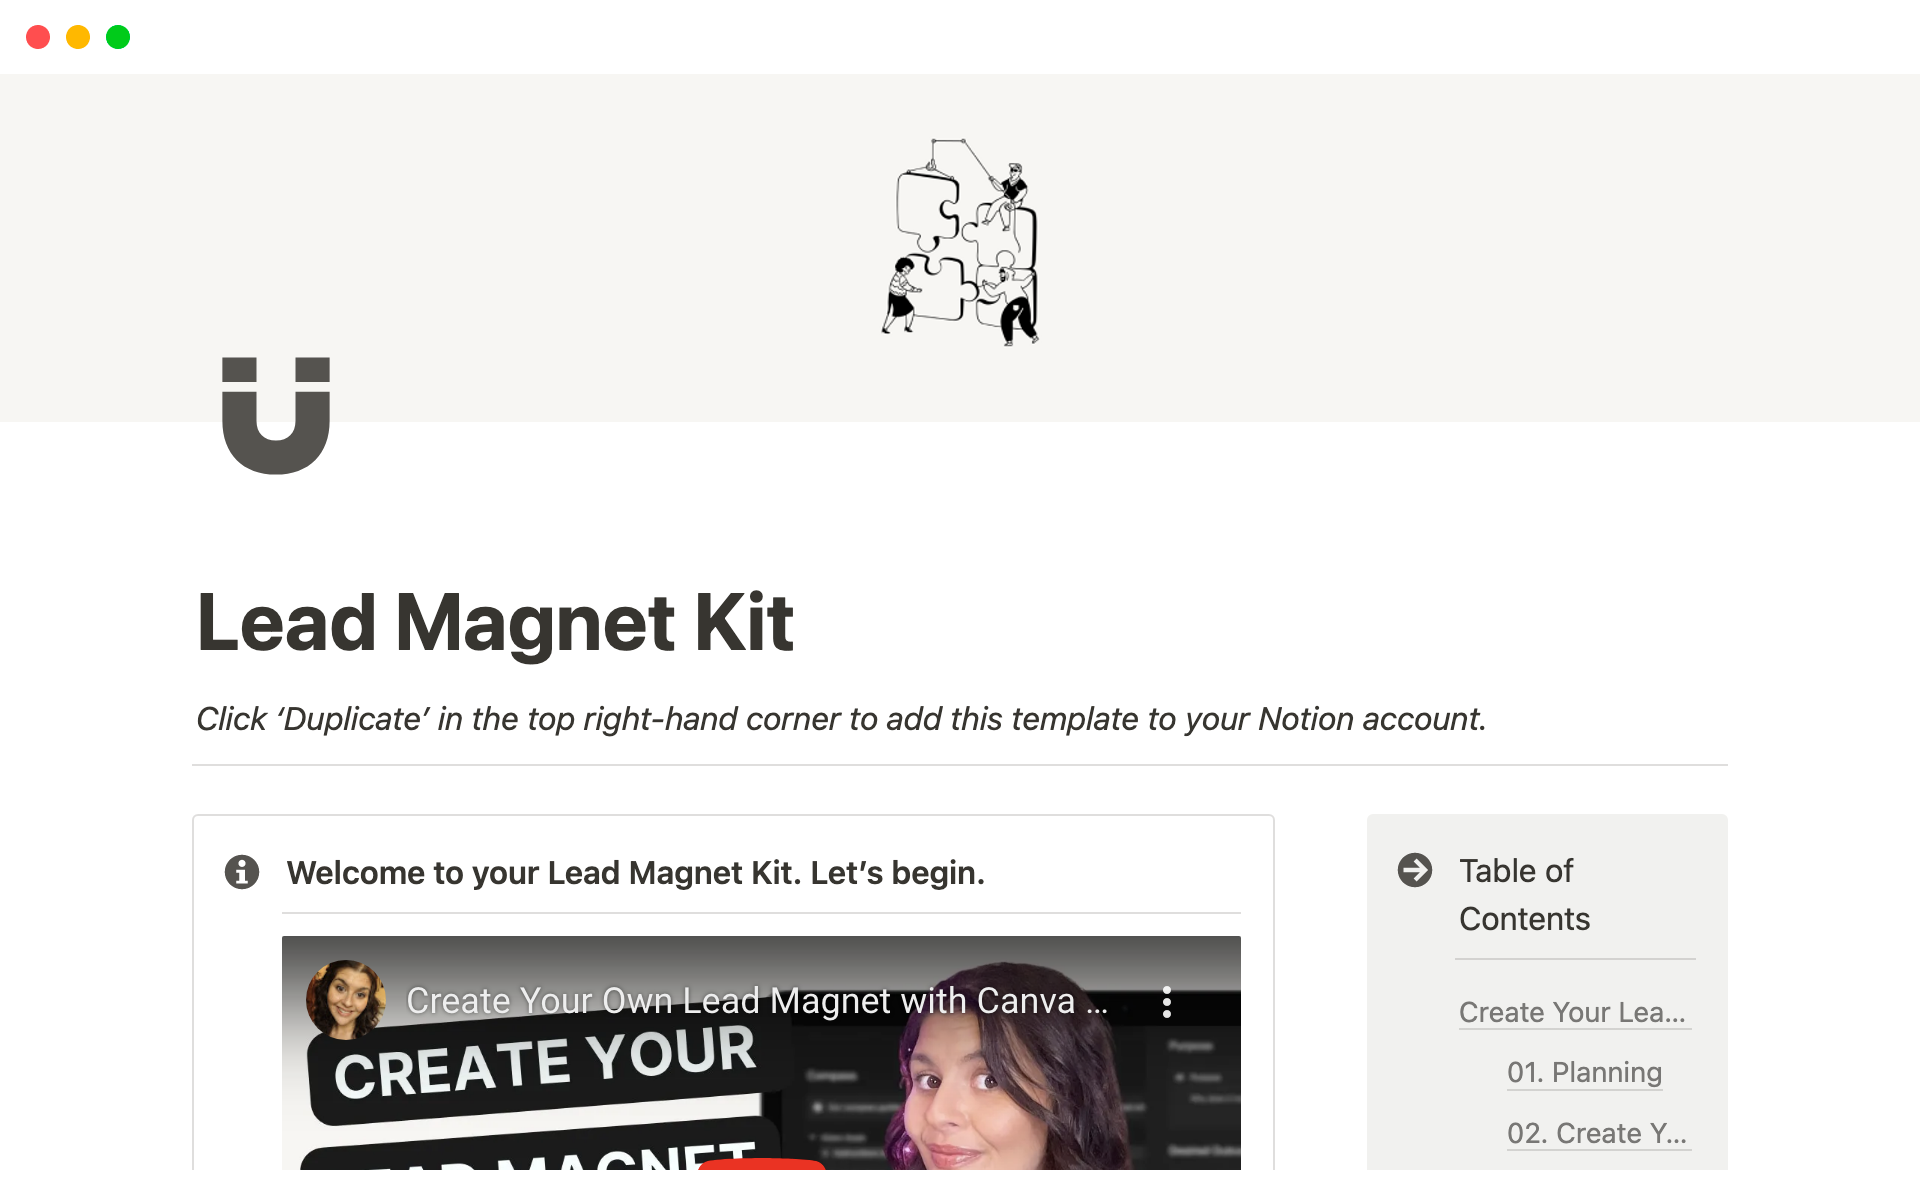 Uma prévia do modelo para Lead Magnet Kit